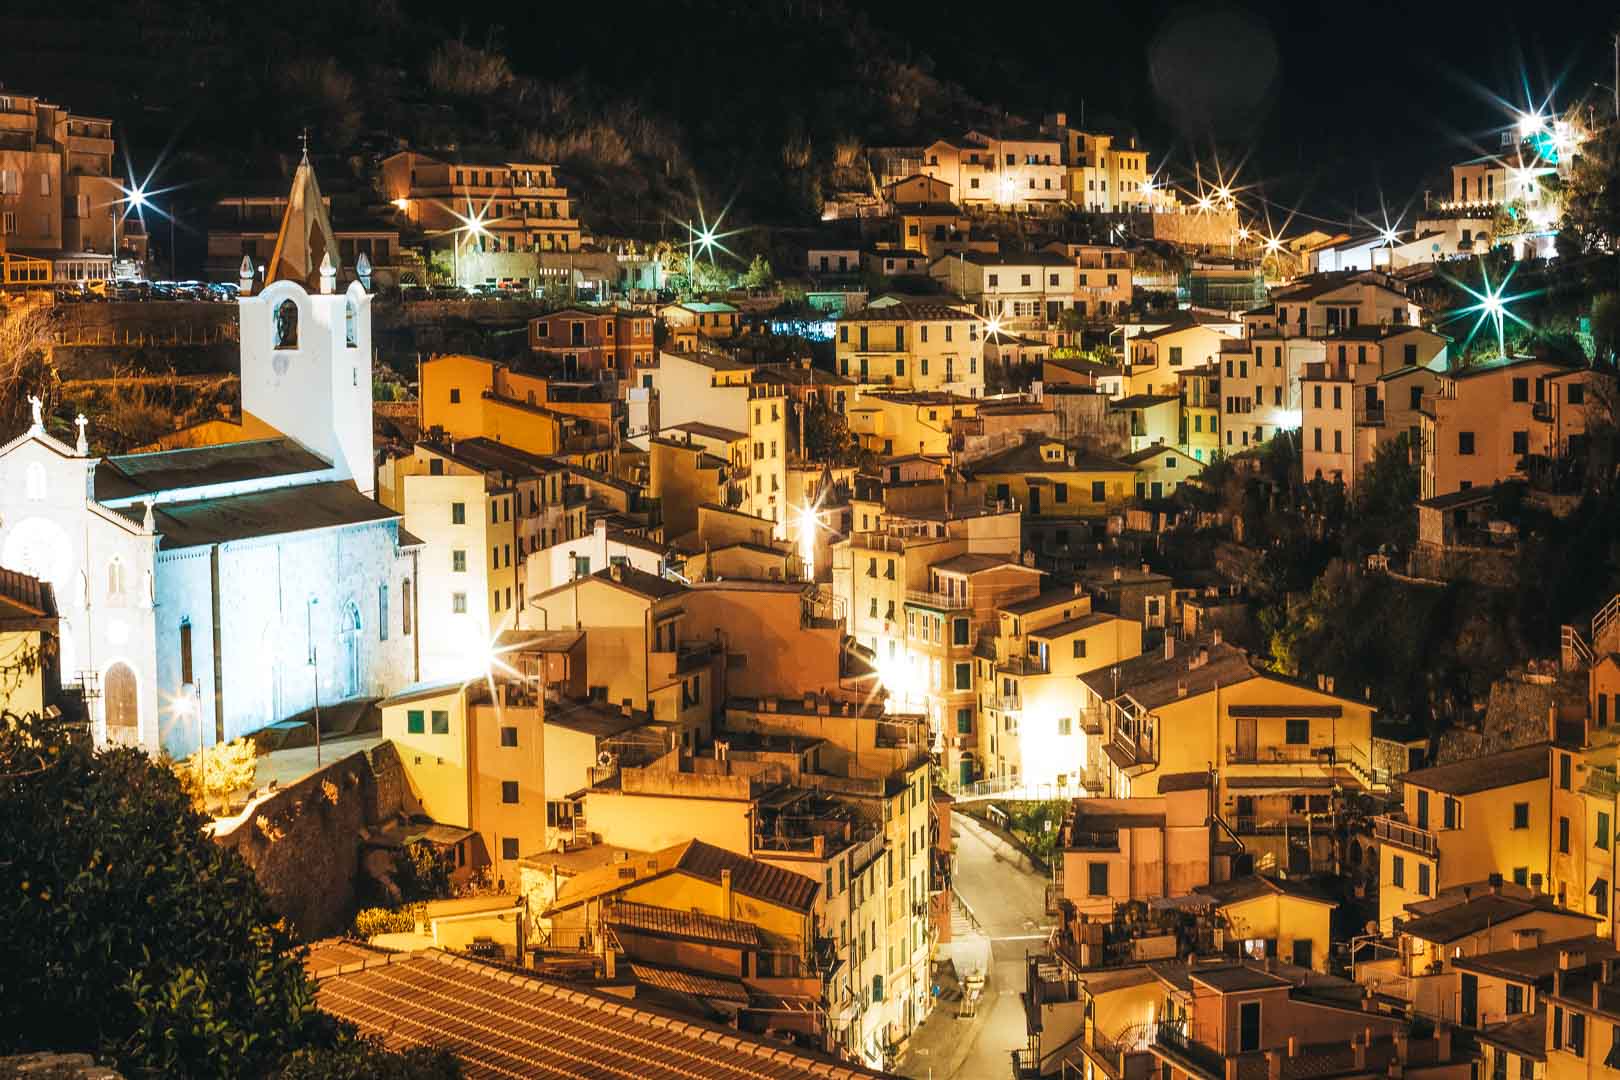 the streets of riomaggiore cinque terre at night